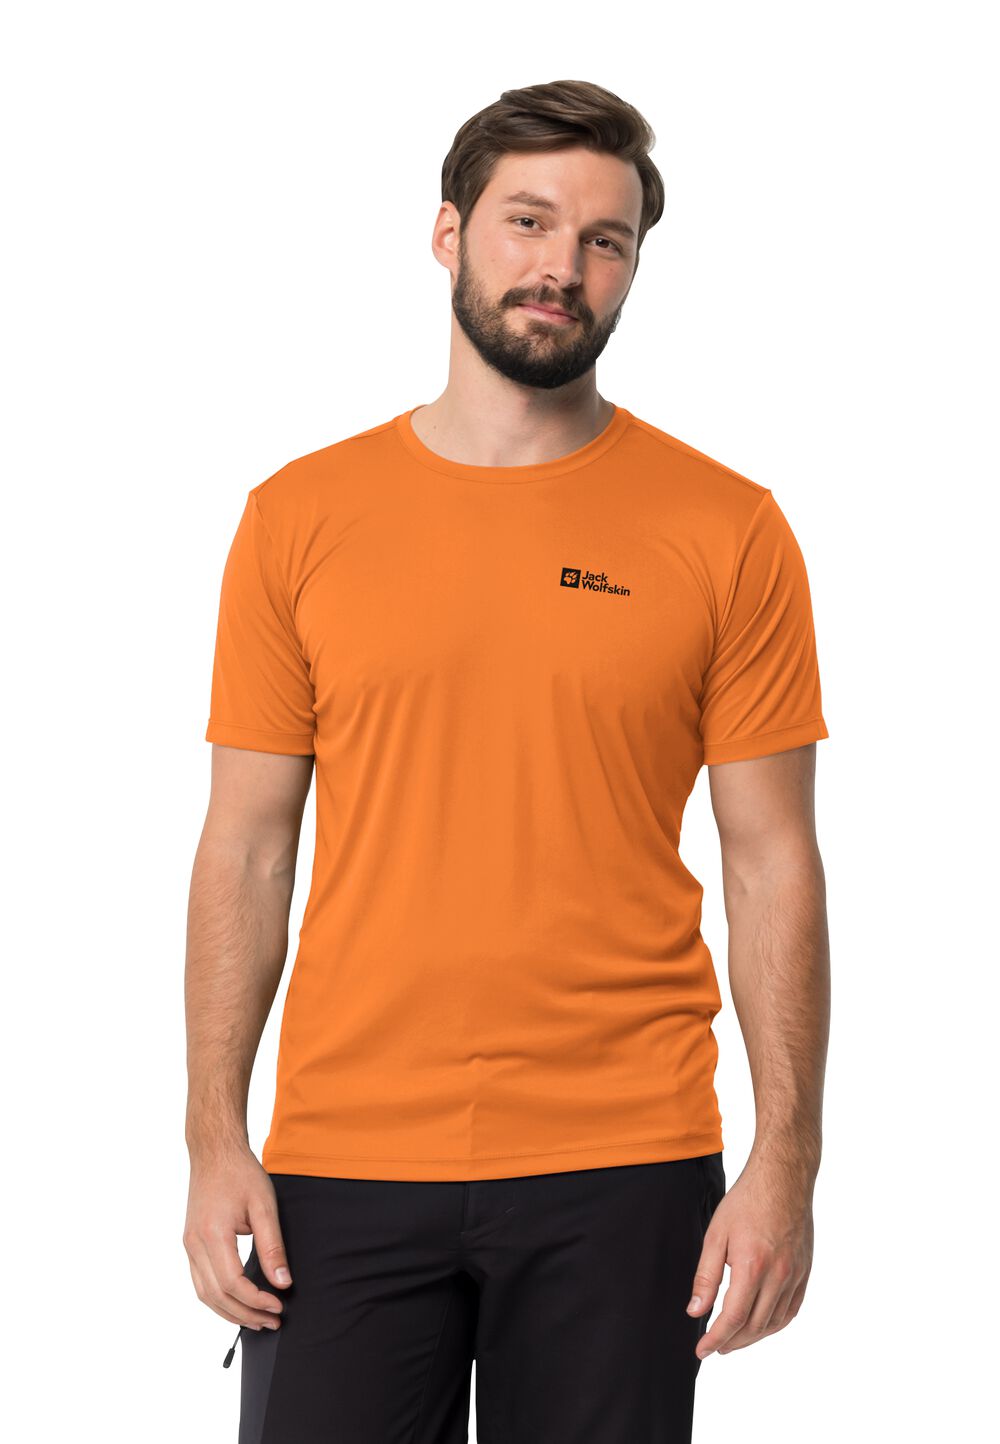 Jack Wolfskin Funktionsshirt Herren Tech T-Shirt Men S orange blood orange von Jack Wolfskin